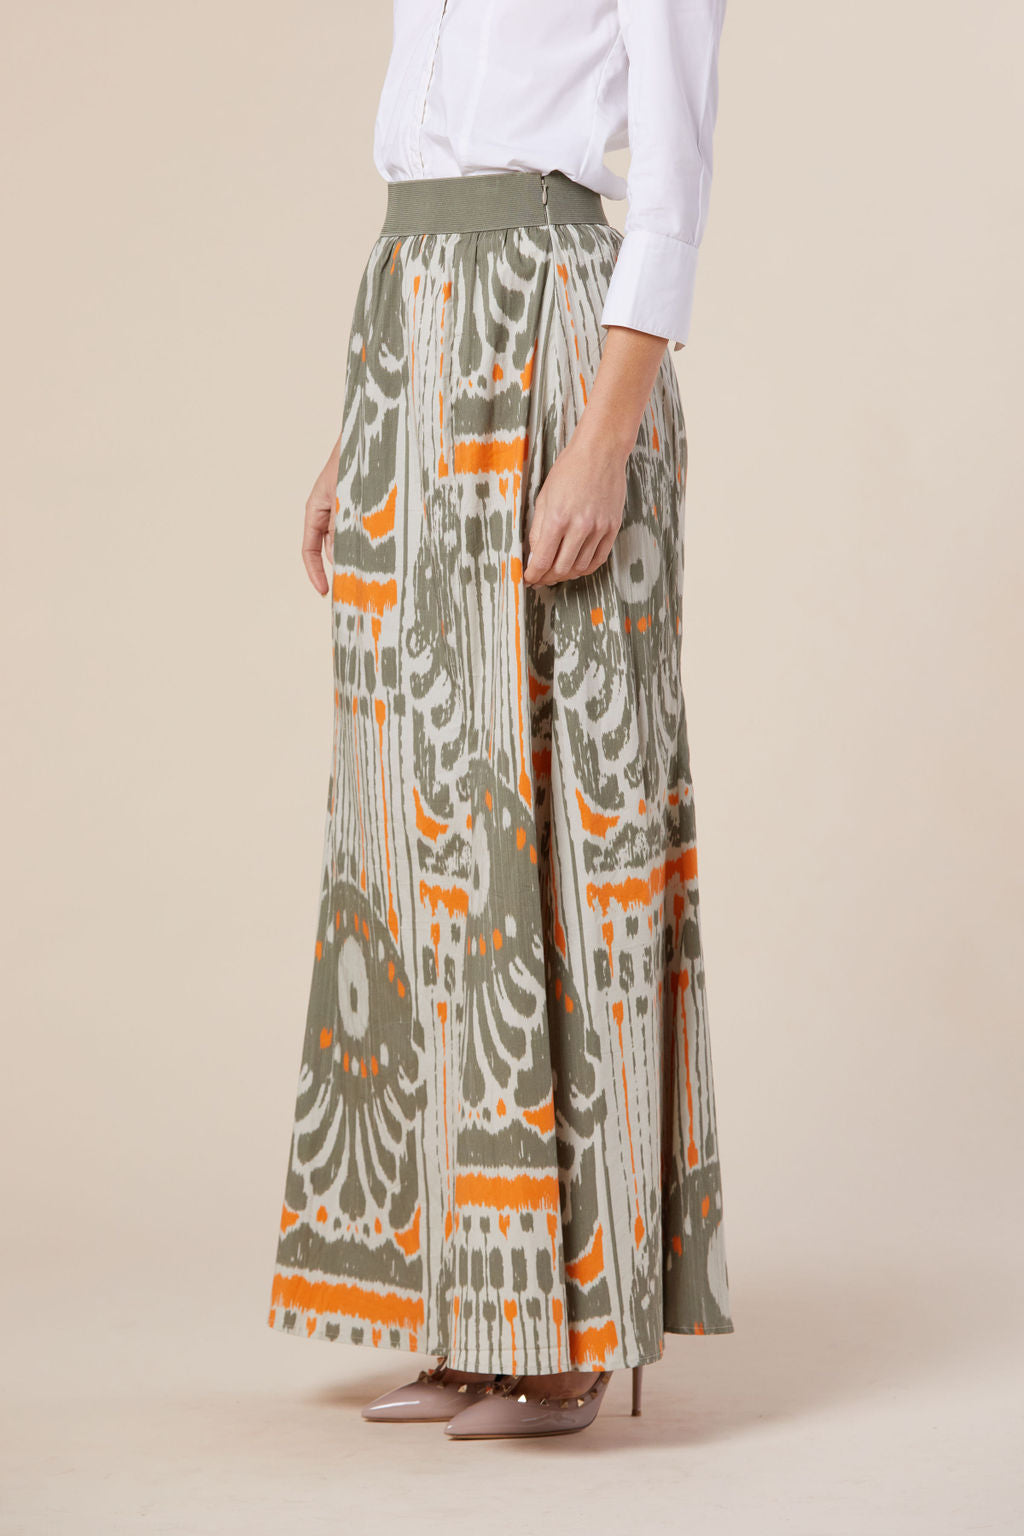 Allegra Skirt in Latte + Orange Moroccan Ikat